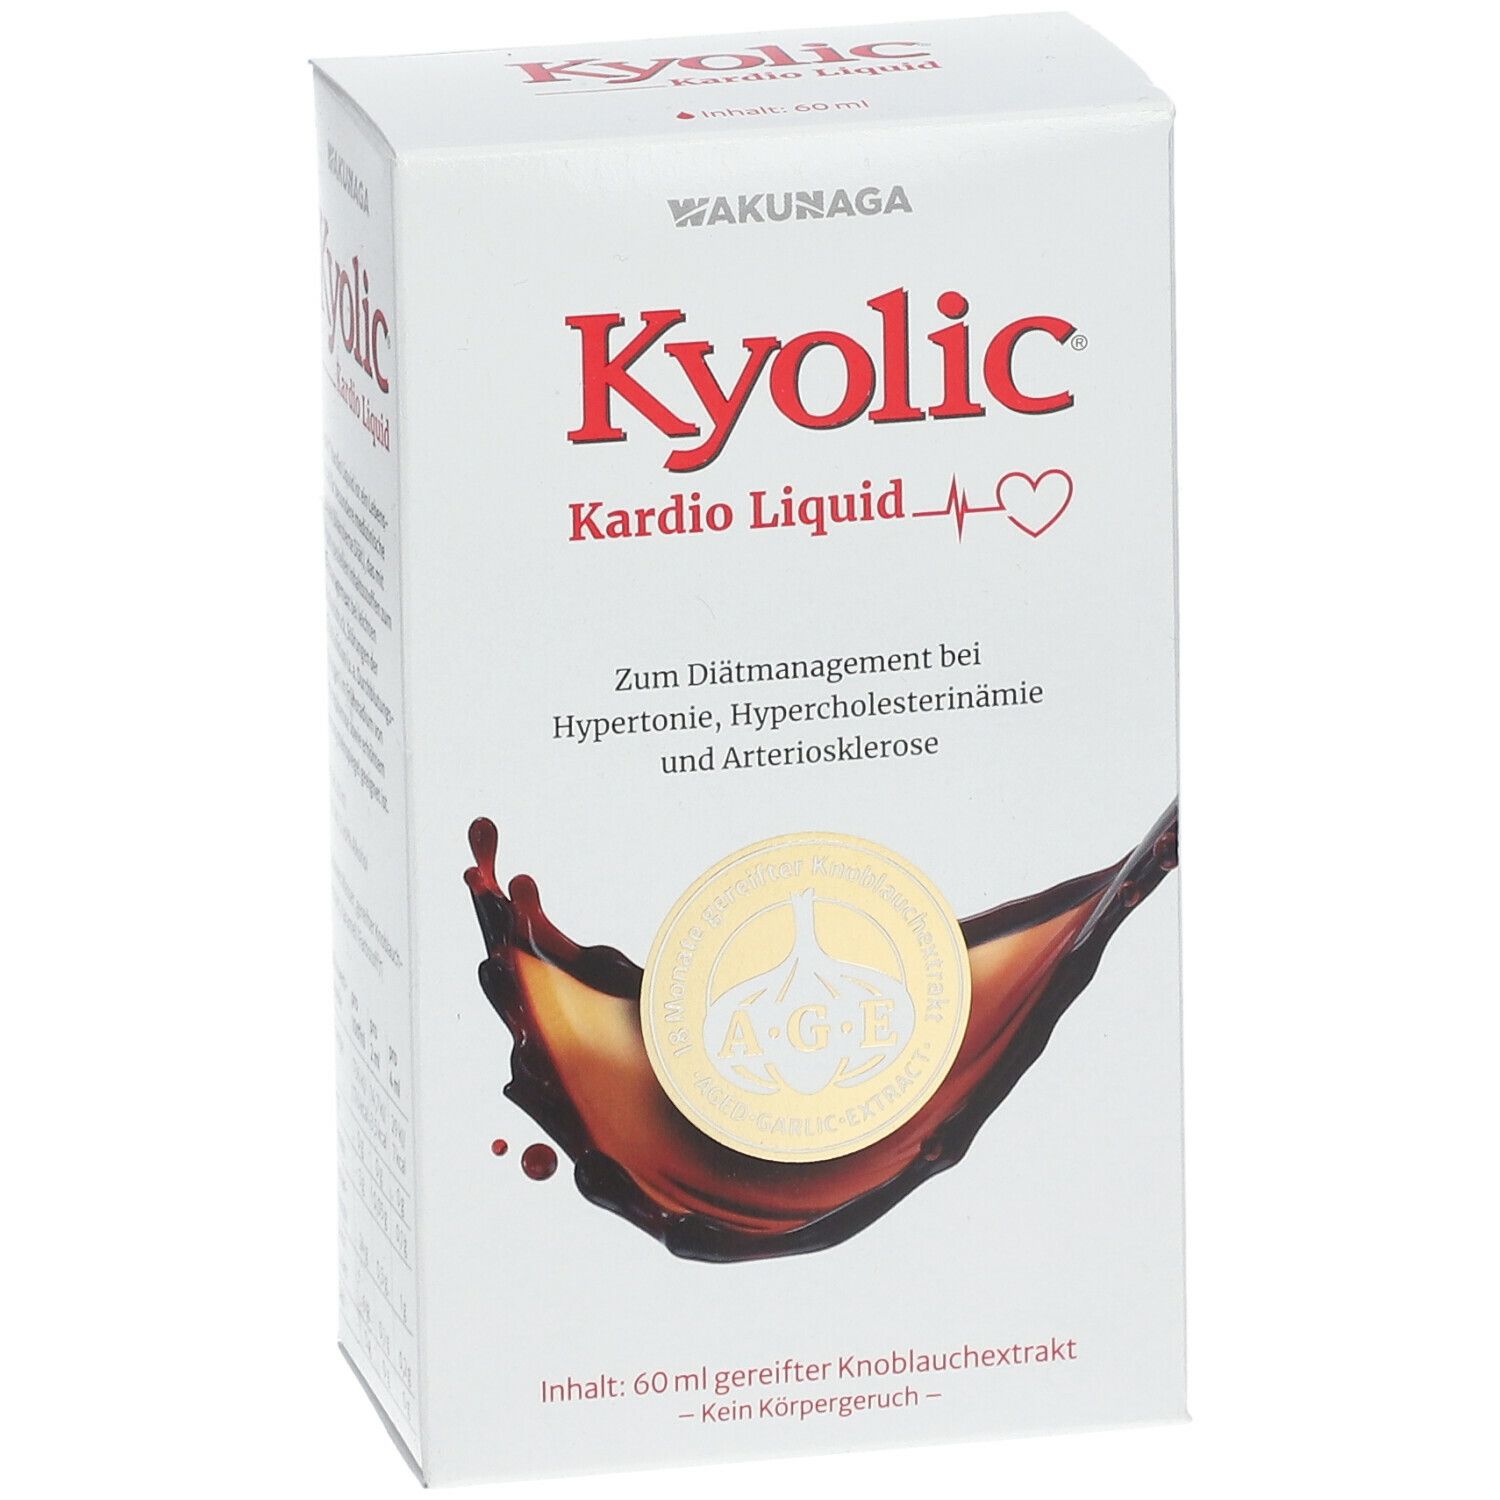  Kyolic® Kardio Liquid